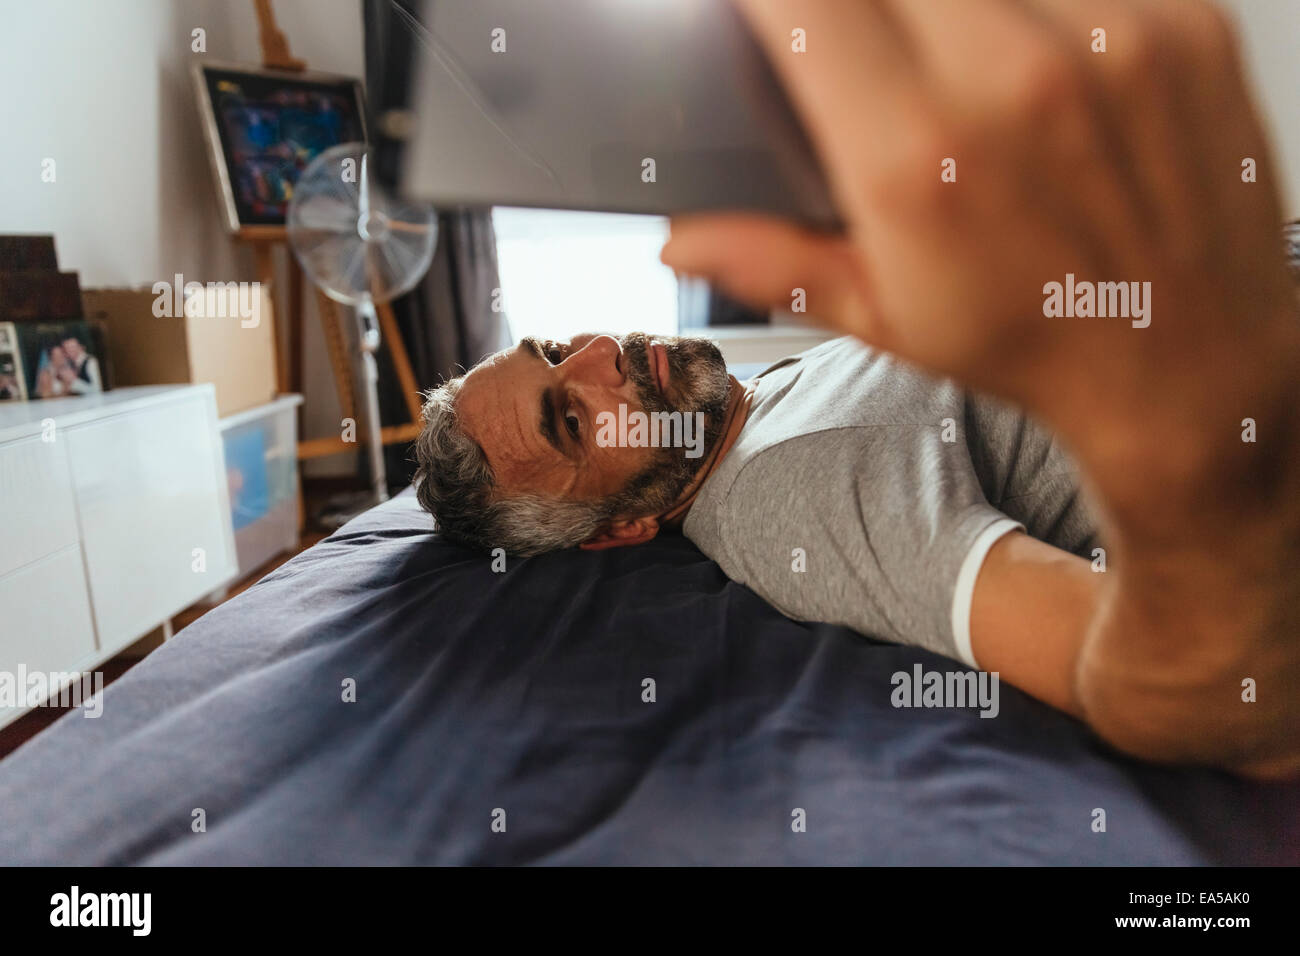 Ernst aussehender Mann liegt auf seinem Bett, wobei ein Selbstporträt mit seinem smartphone Stockfoto